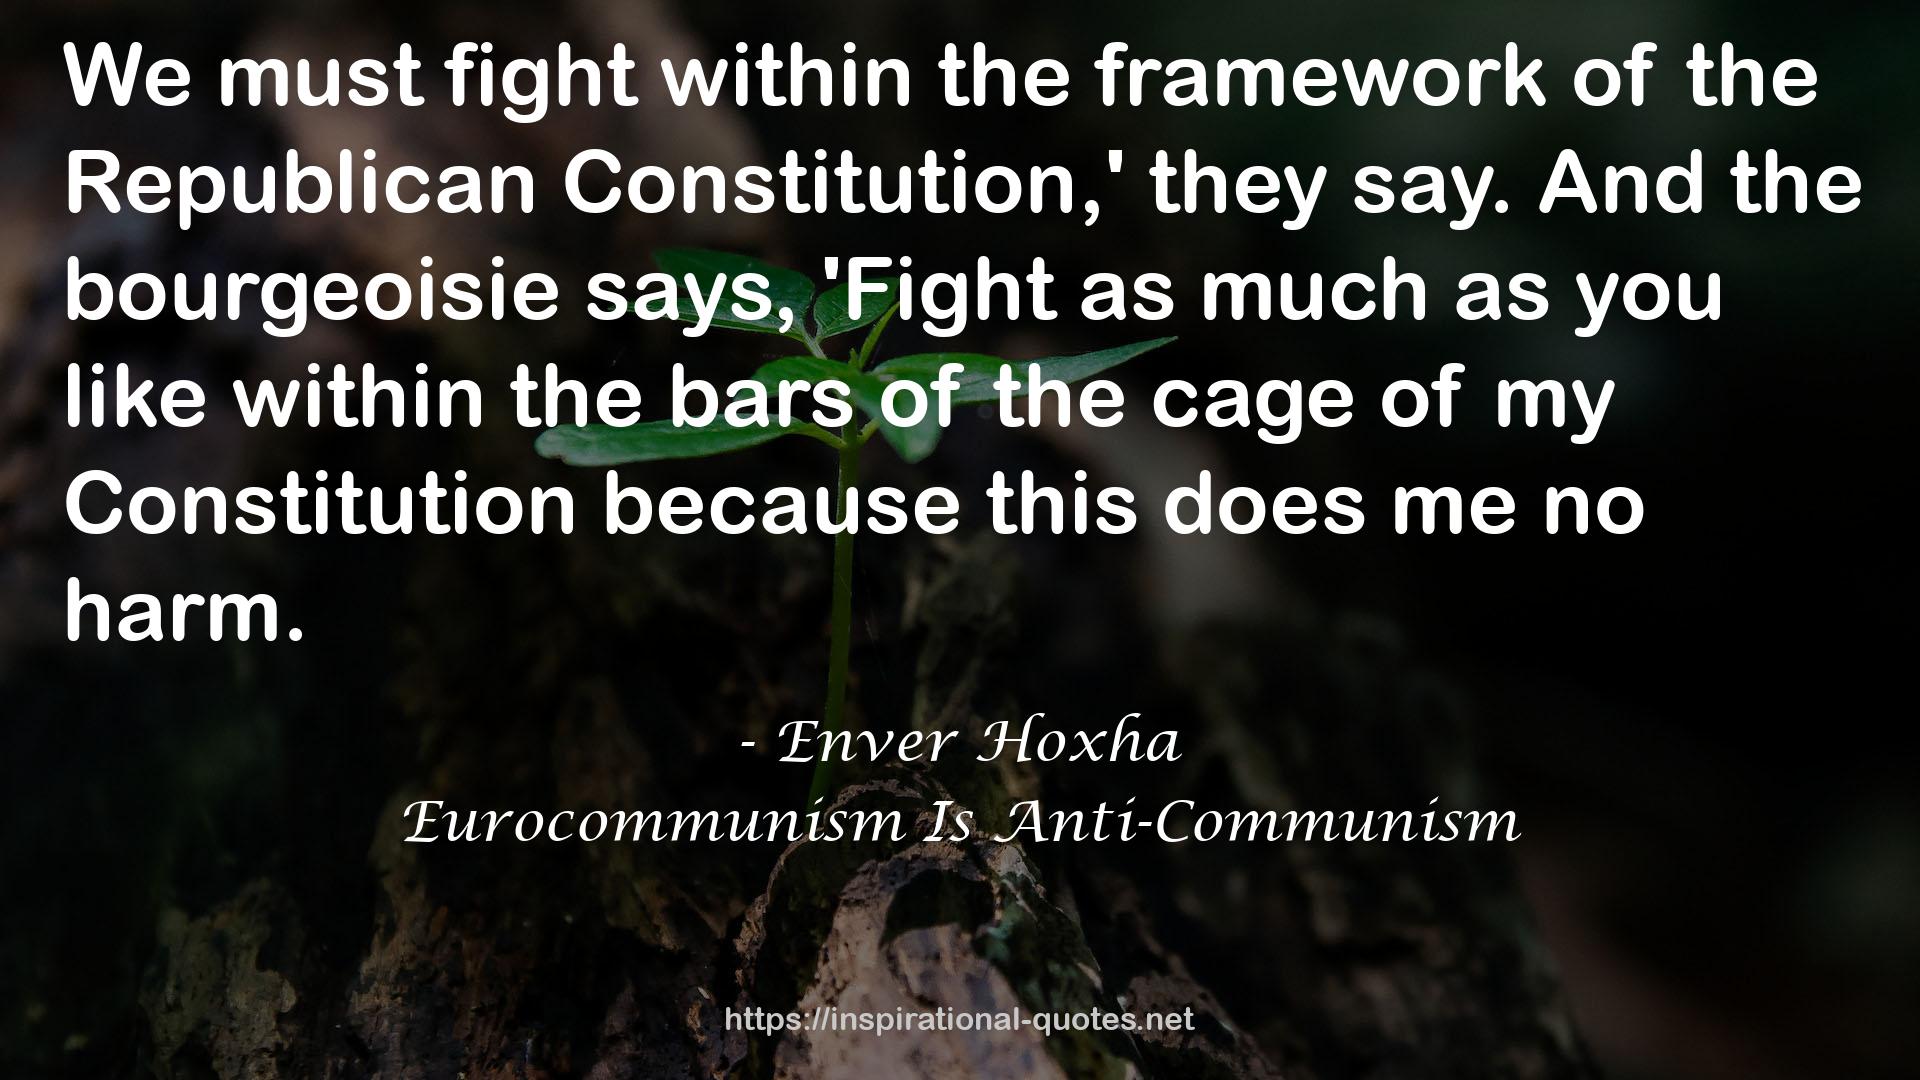 Eurocommunism Is Anti-Communism QUOTES